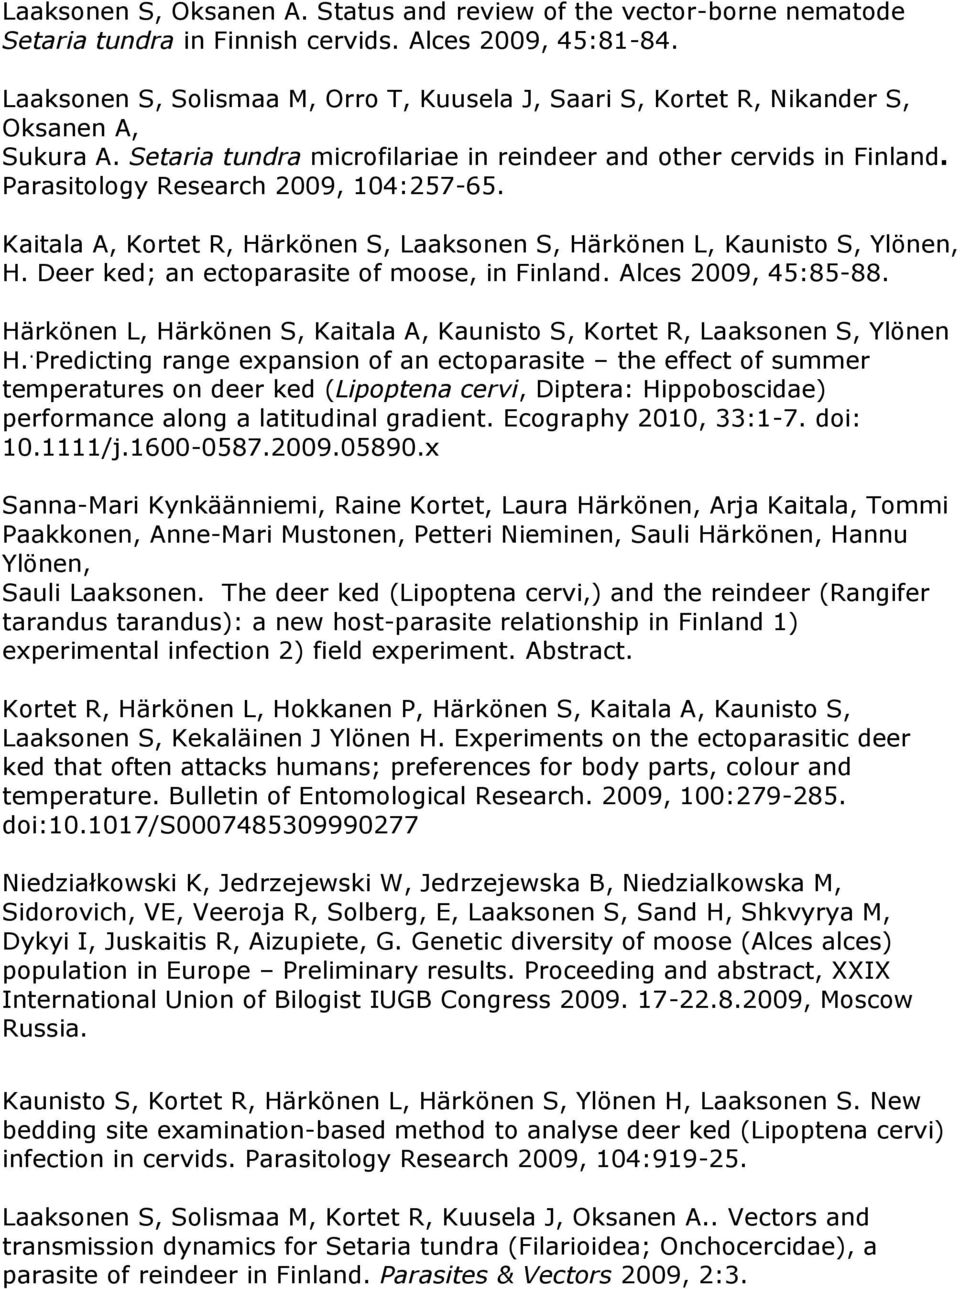 Parasitology Research 2009, 104:257-65. Kaitala A, Kortet R, Härkönen S, Laaksonen S, Härkönen L, Kaunisto S, Ylönen, H. Deer ked; an ectoparasite of moose, in Finland. Alces 2009, 45:85-88.